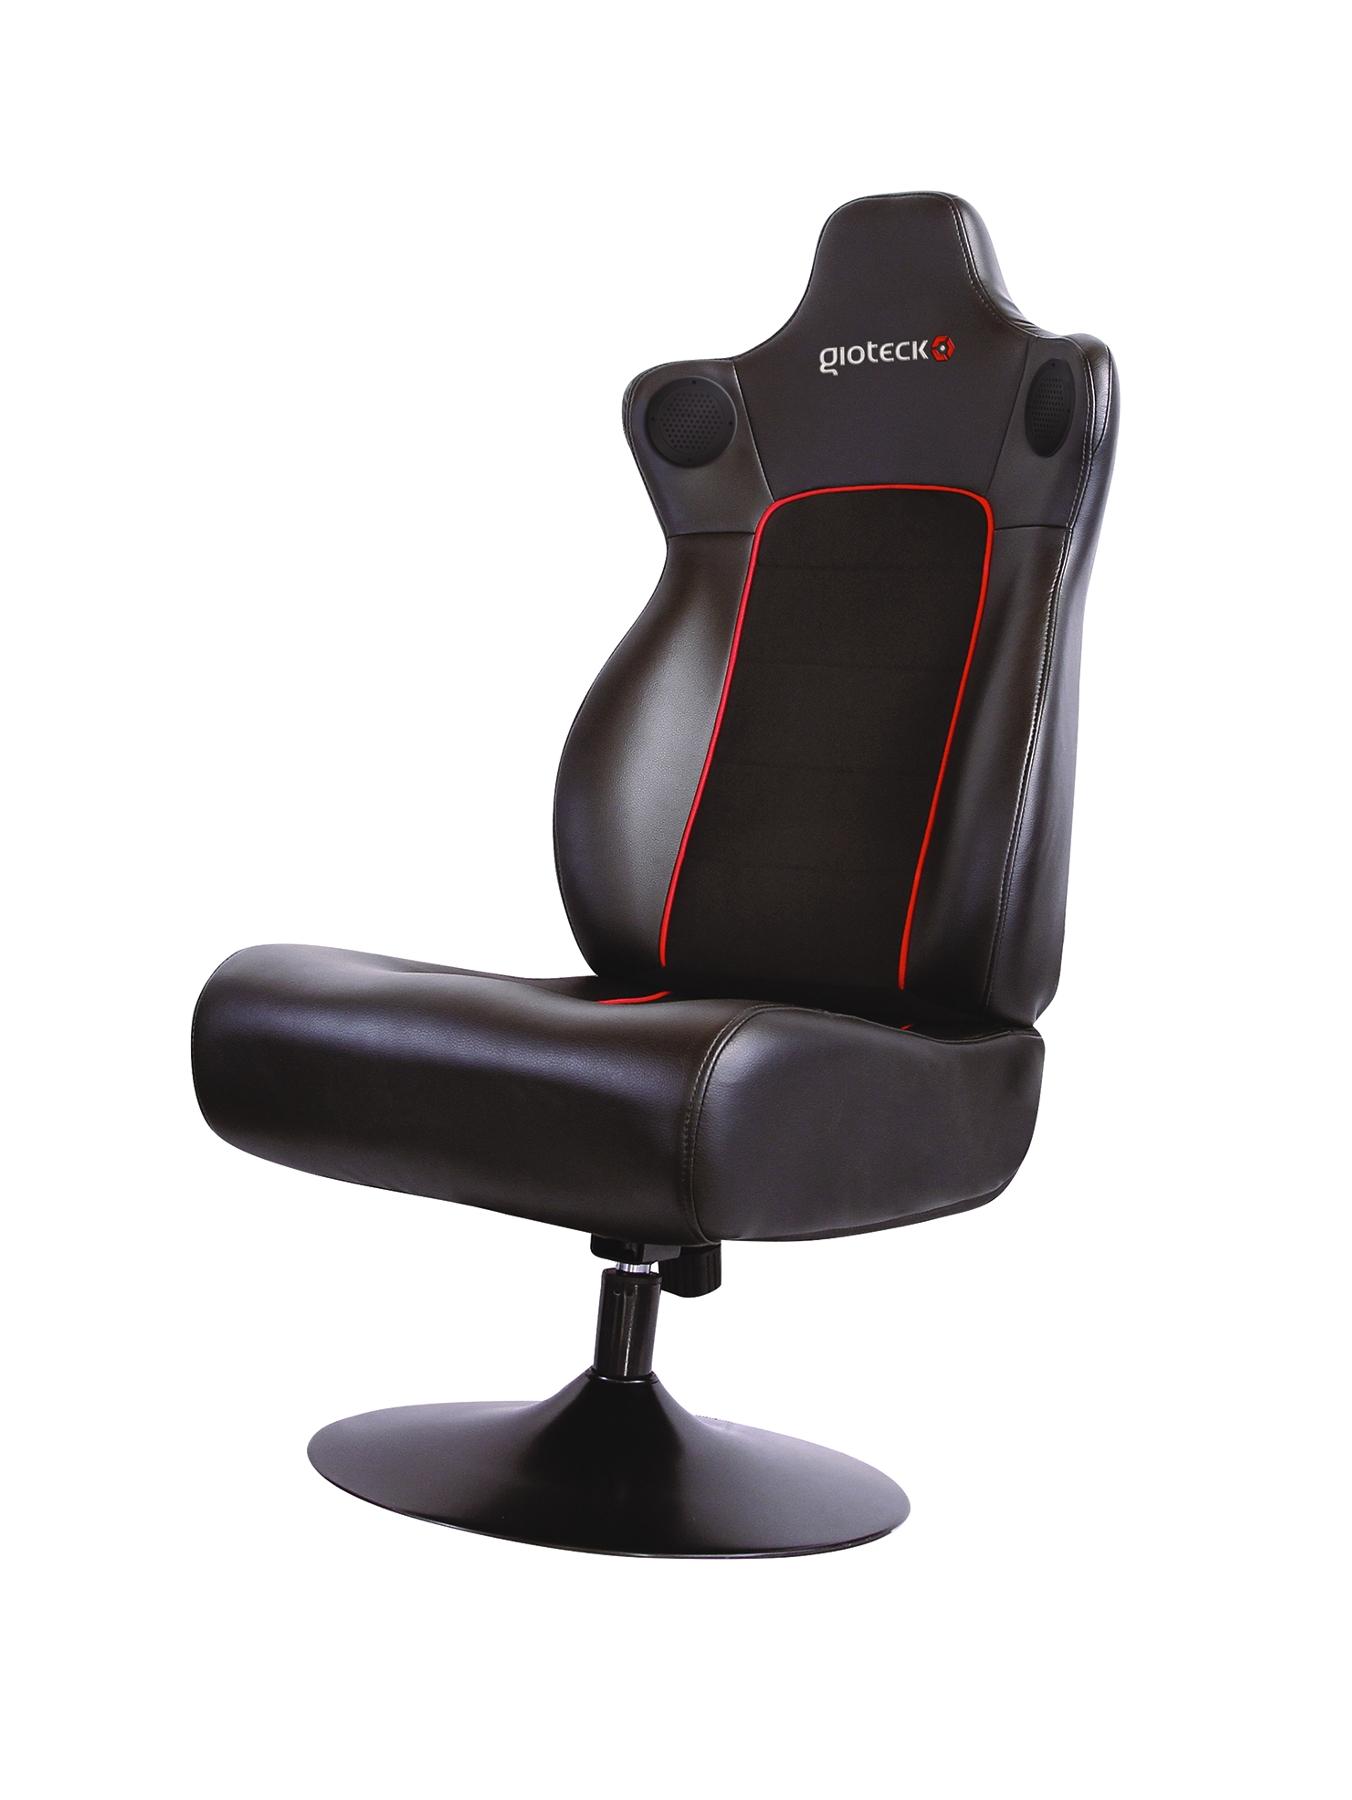 gaming chair cheap